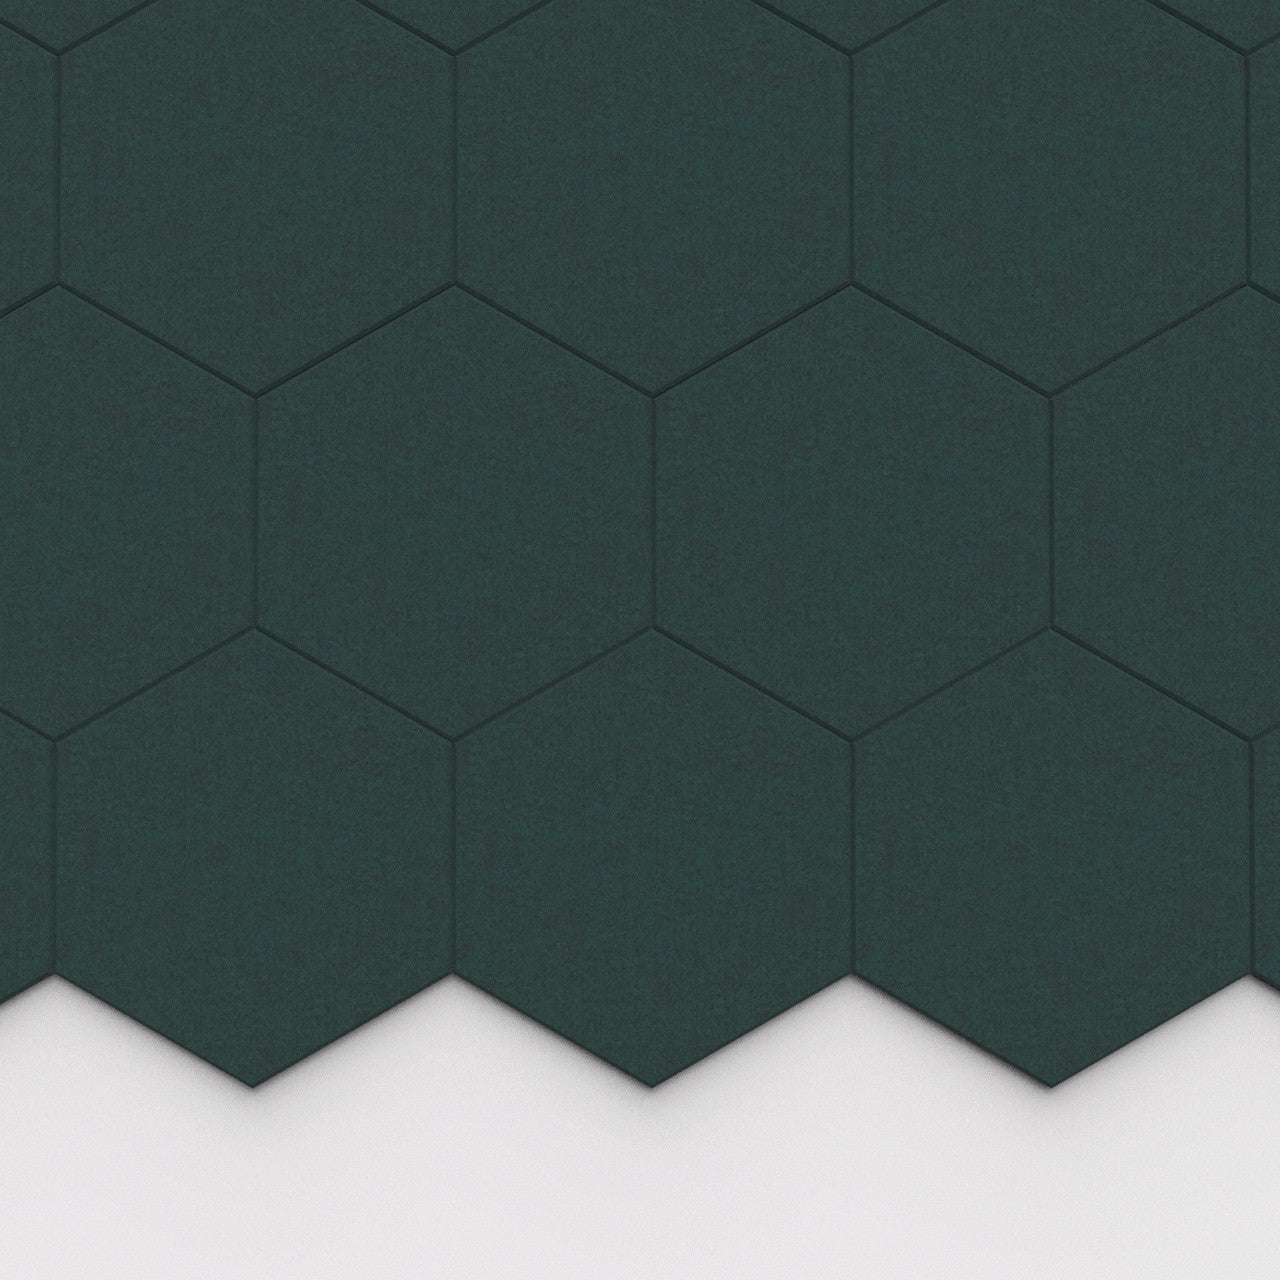 100% Recycled PET Felt Hexagon Plain Large Acoustic Tile Dark Green | Plastock